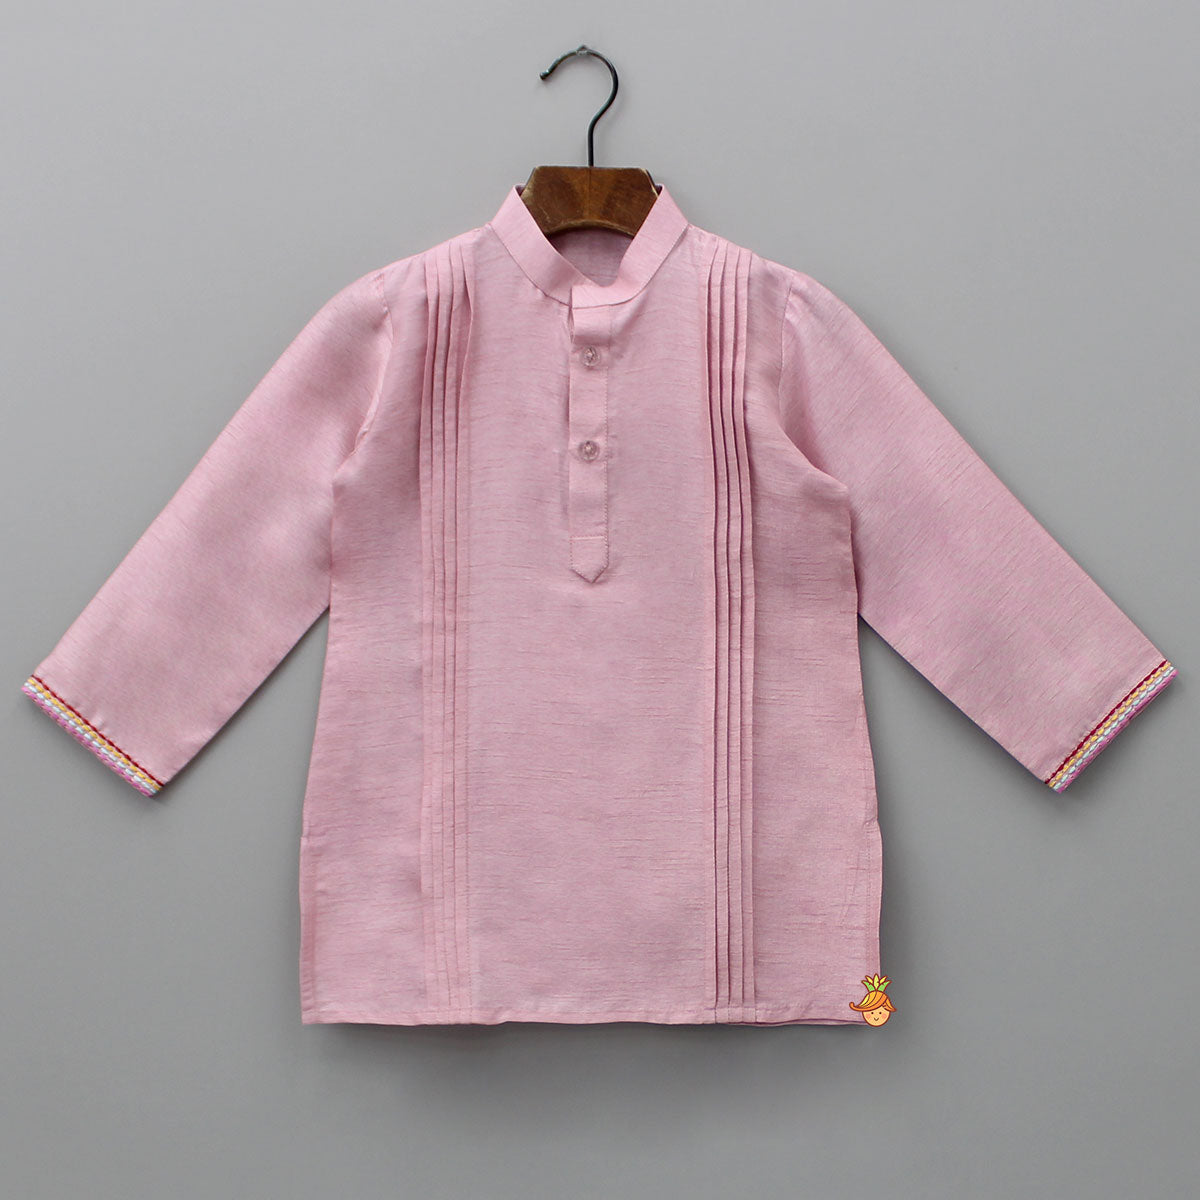 Purple Pintuck Kurta And Thread Embroidered Jacket With Pyjama